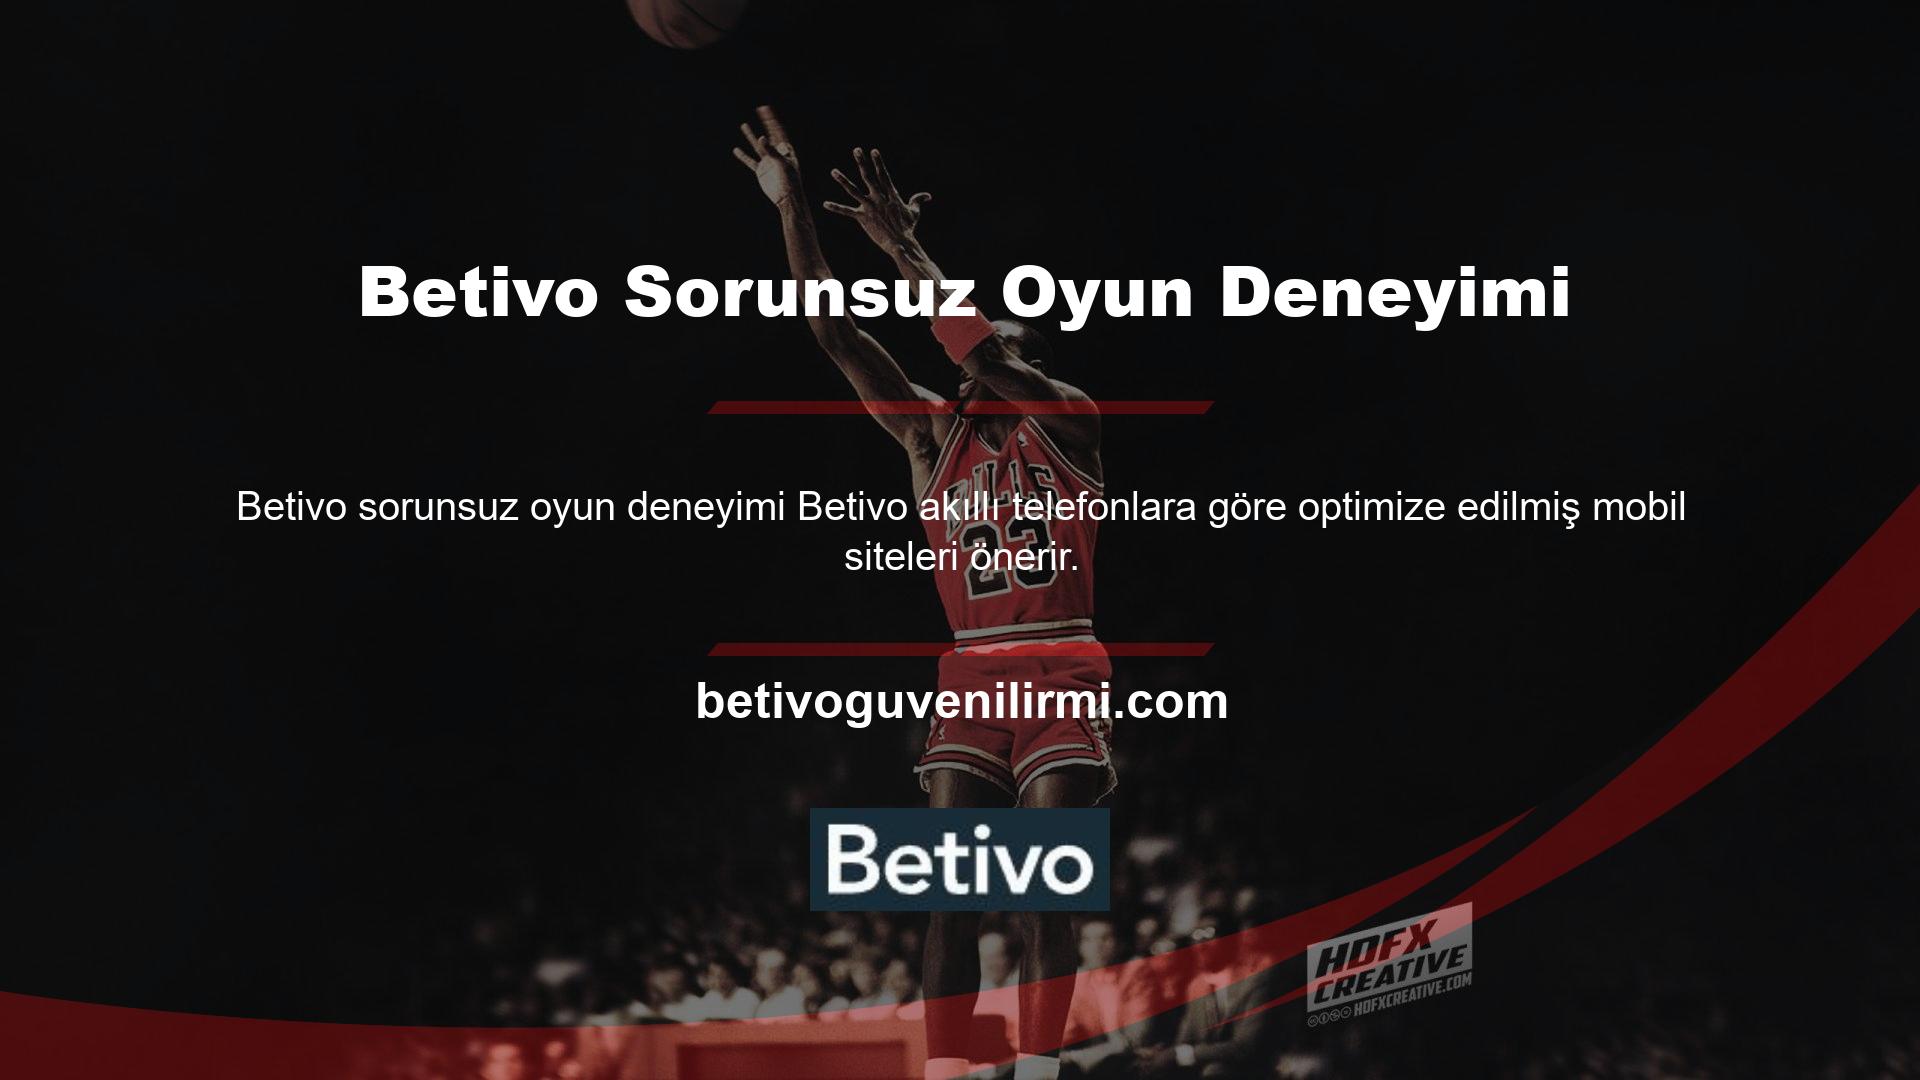 Betivo, sorunlarınızı çözmek için gerçek zamanlı ve zamanında destek sağlar